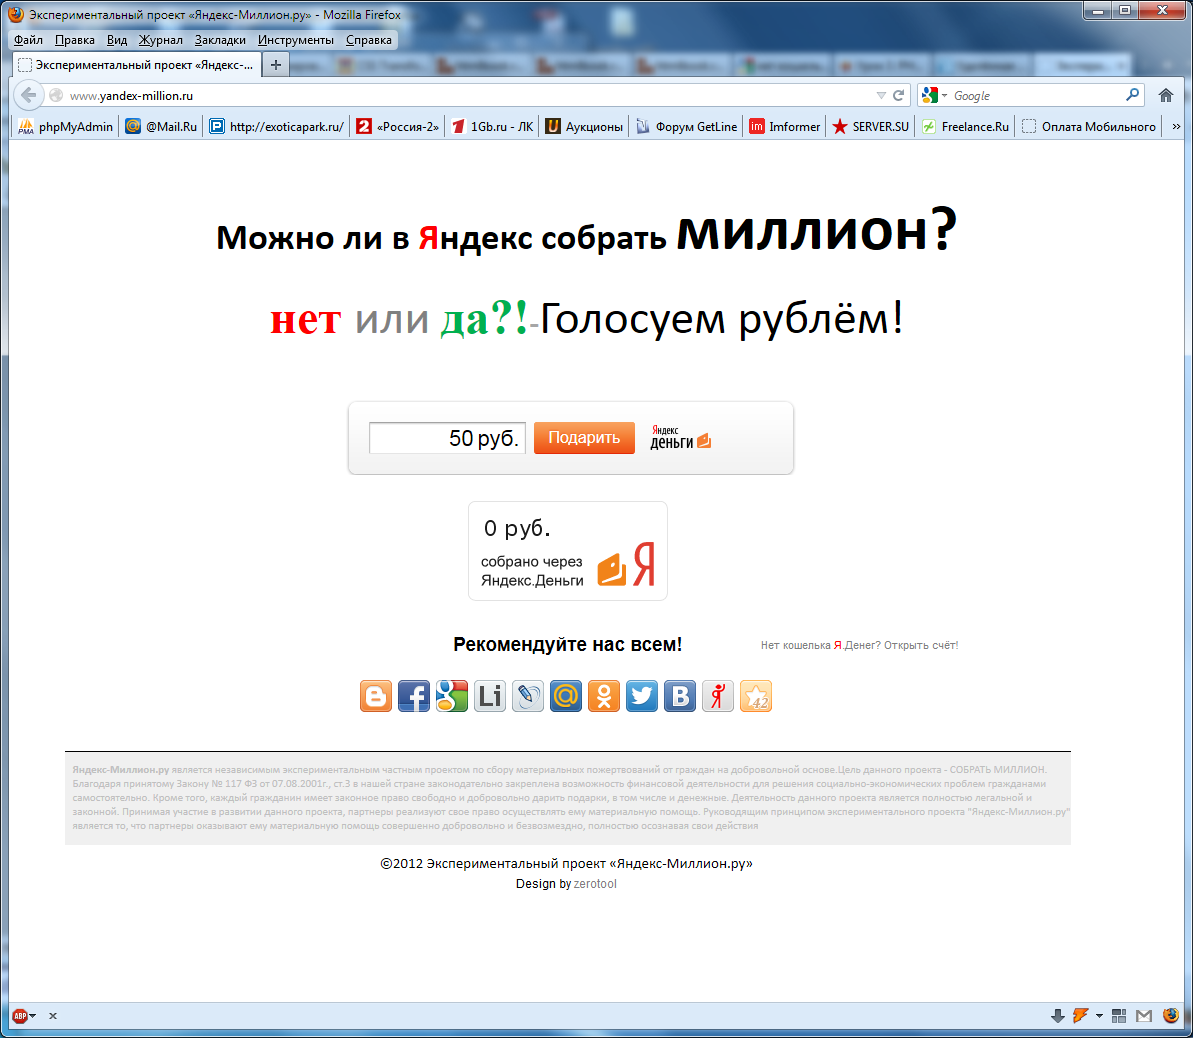 Экспериментальный проект «Яндекс-Миллион.ру»